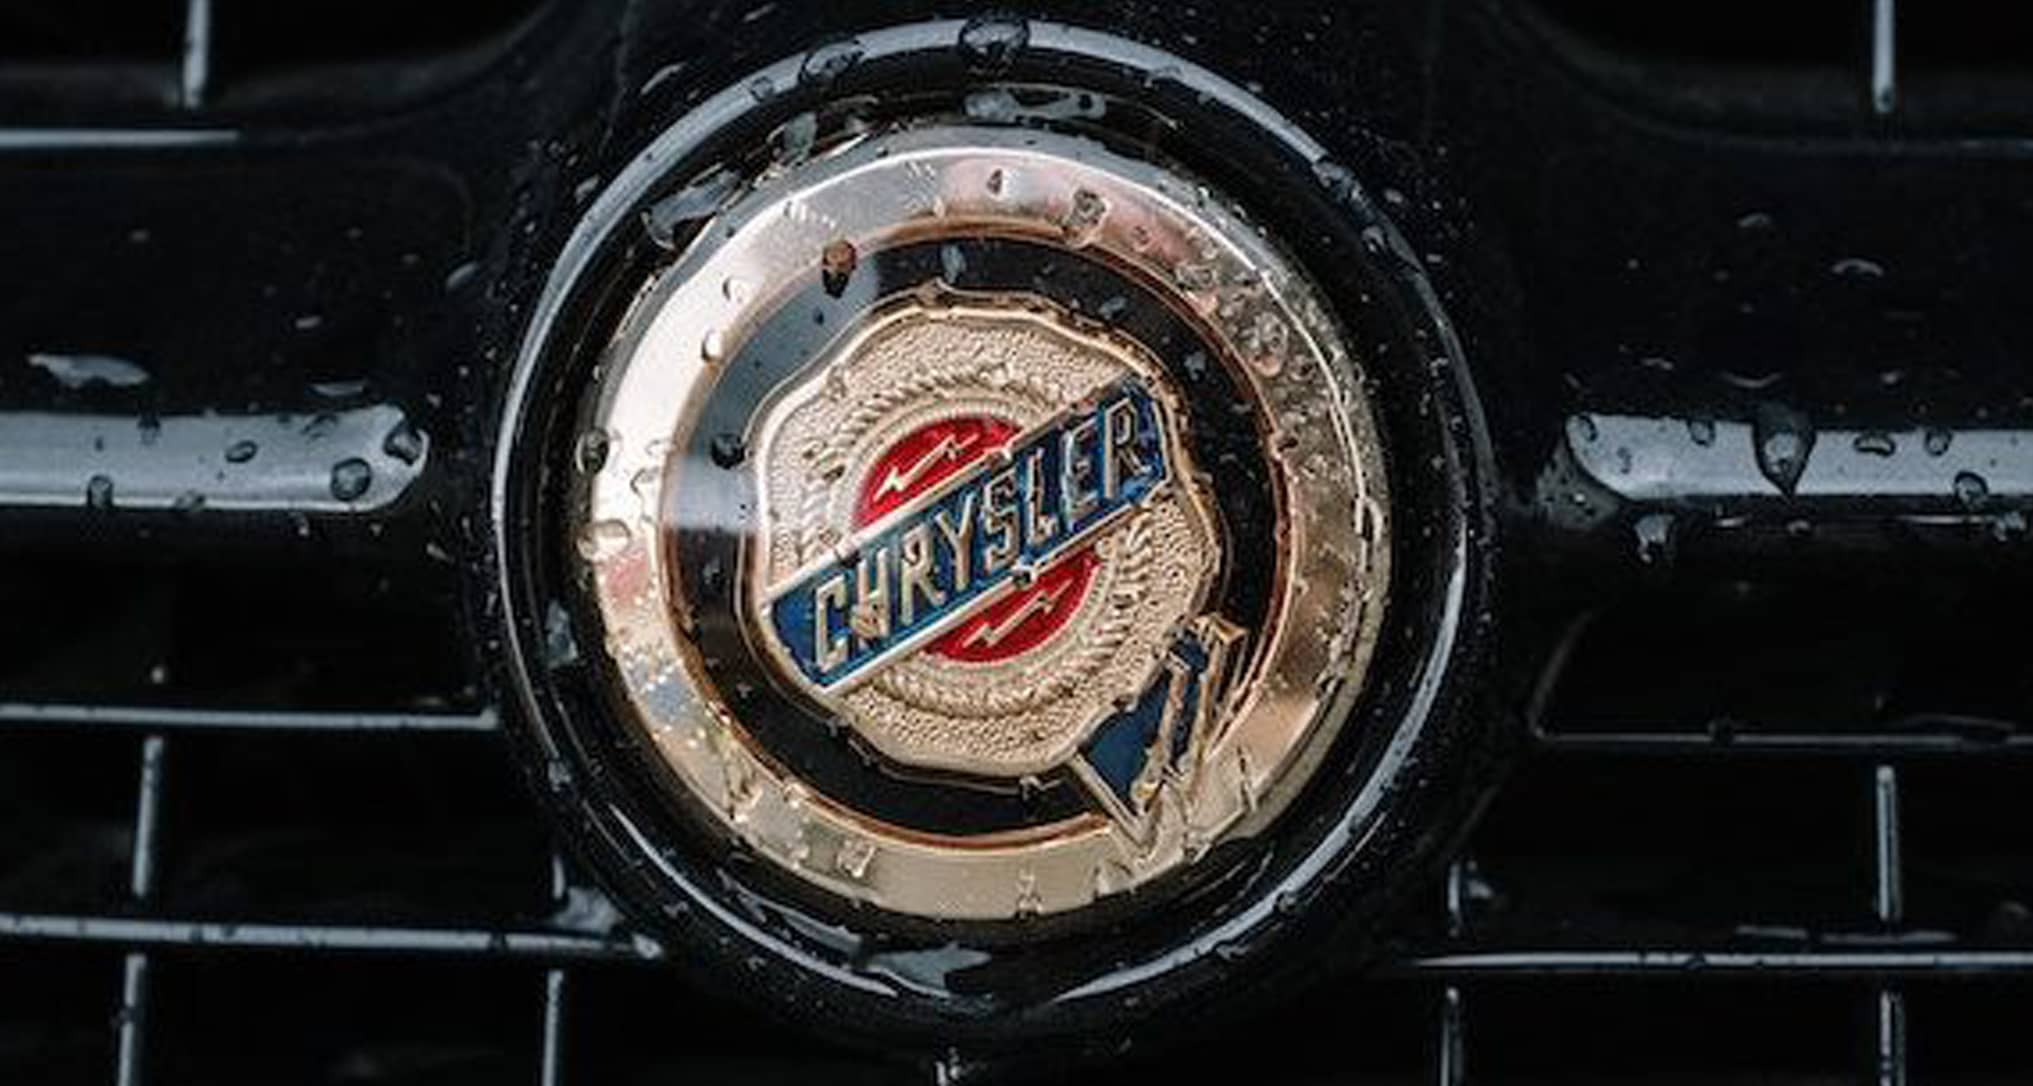 Chrysler logo on car